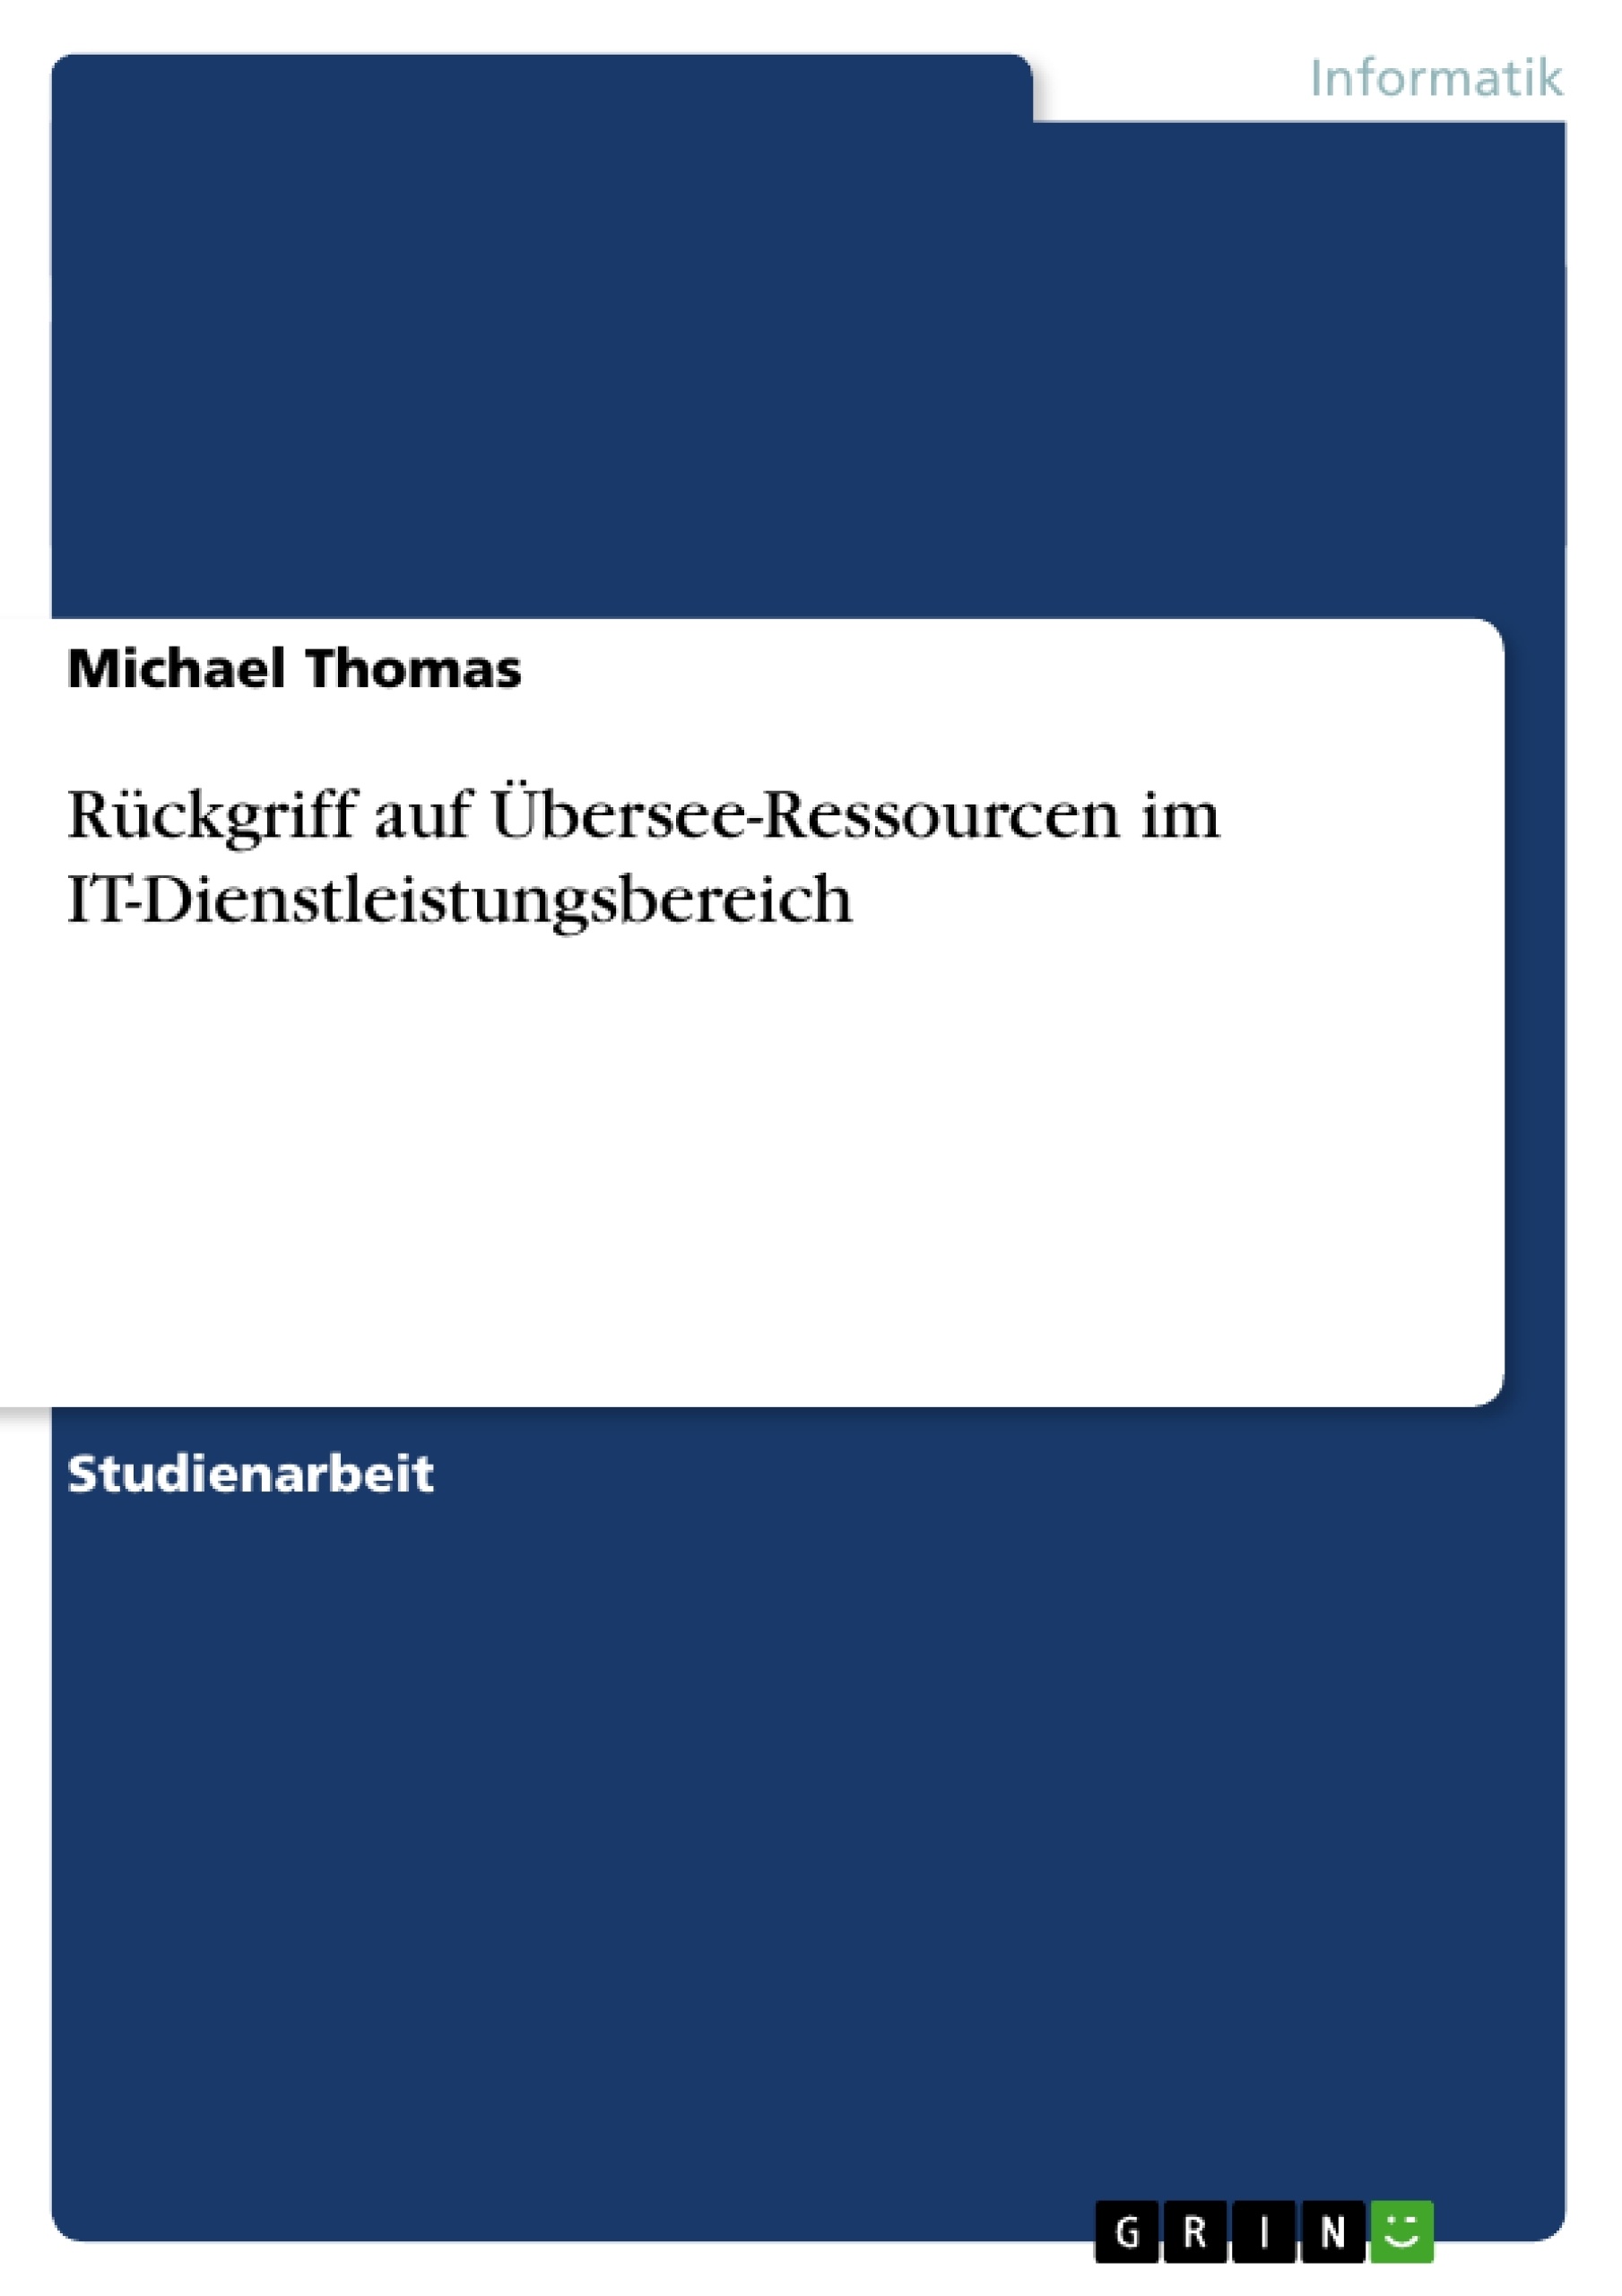 Título: Rückgriff auf Übersee-Ressourcen im IT-Dienstleistungsbereich